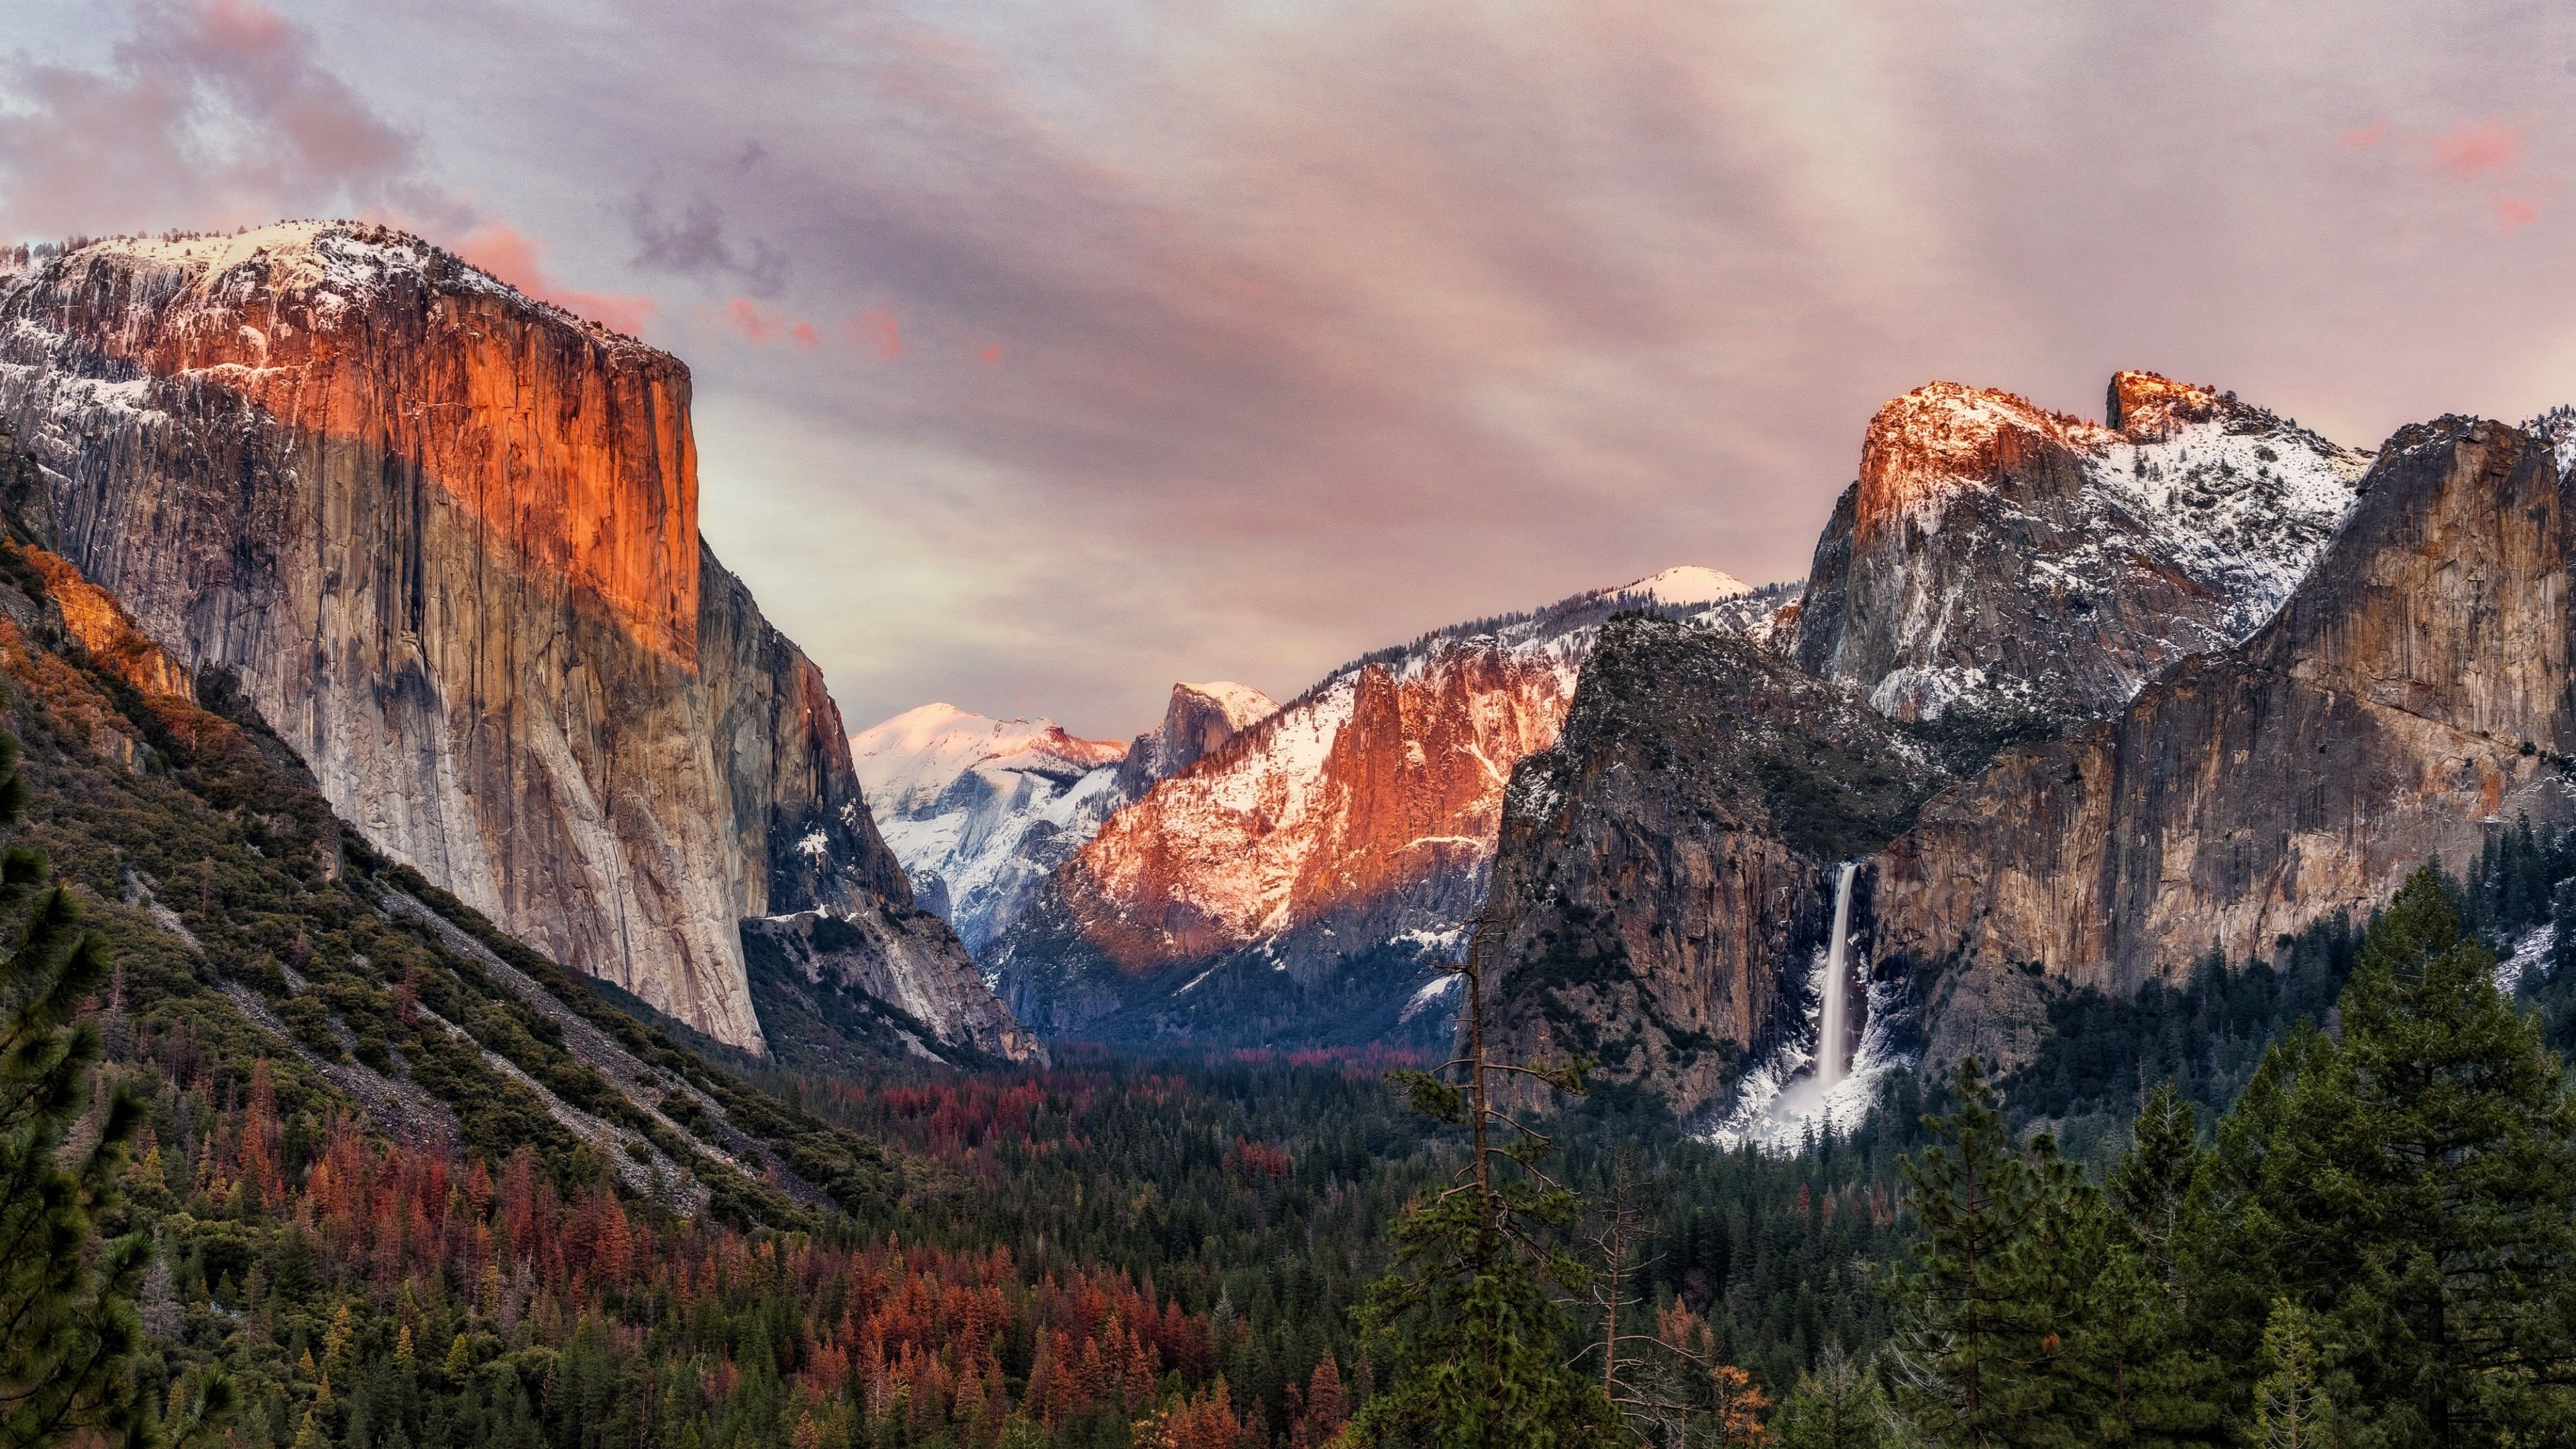 Wallpaper Yosemite National Park, El Capitan, Yosemite Valley, 4K, Nature,. Wallpaper for iPhone, Android, Mobile and Desktop